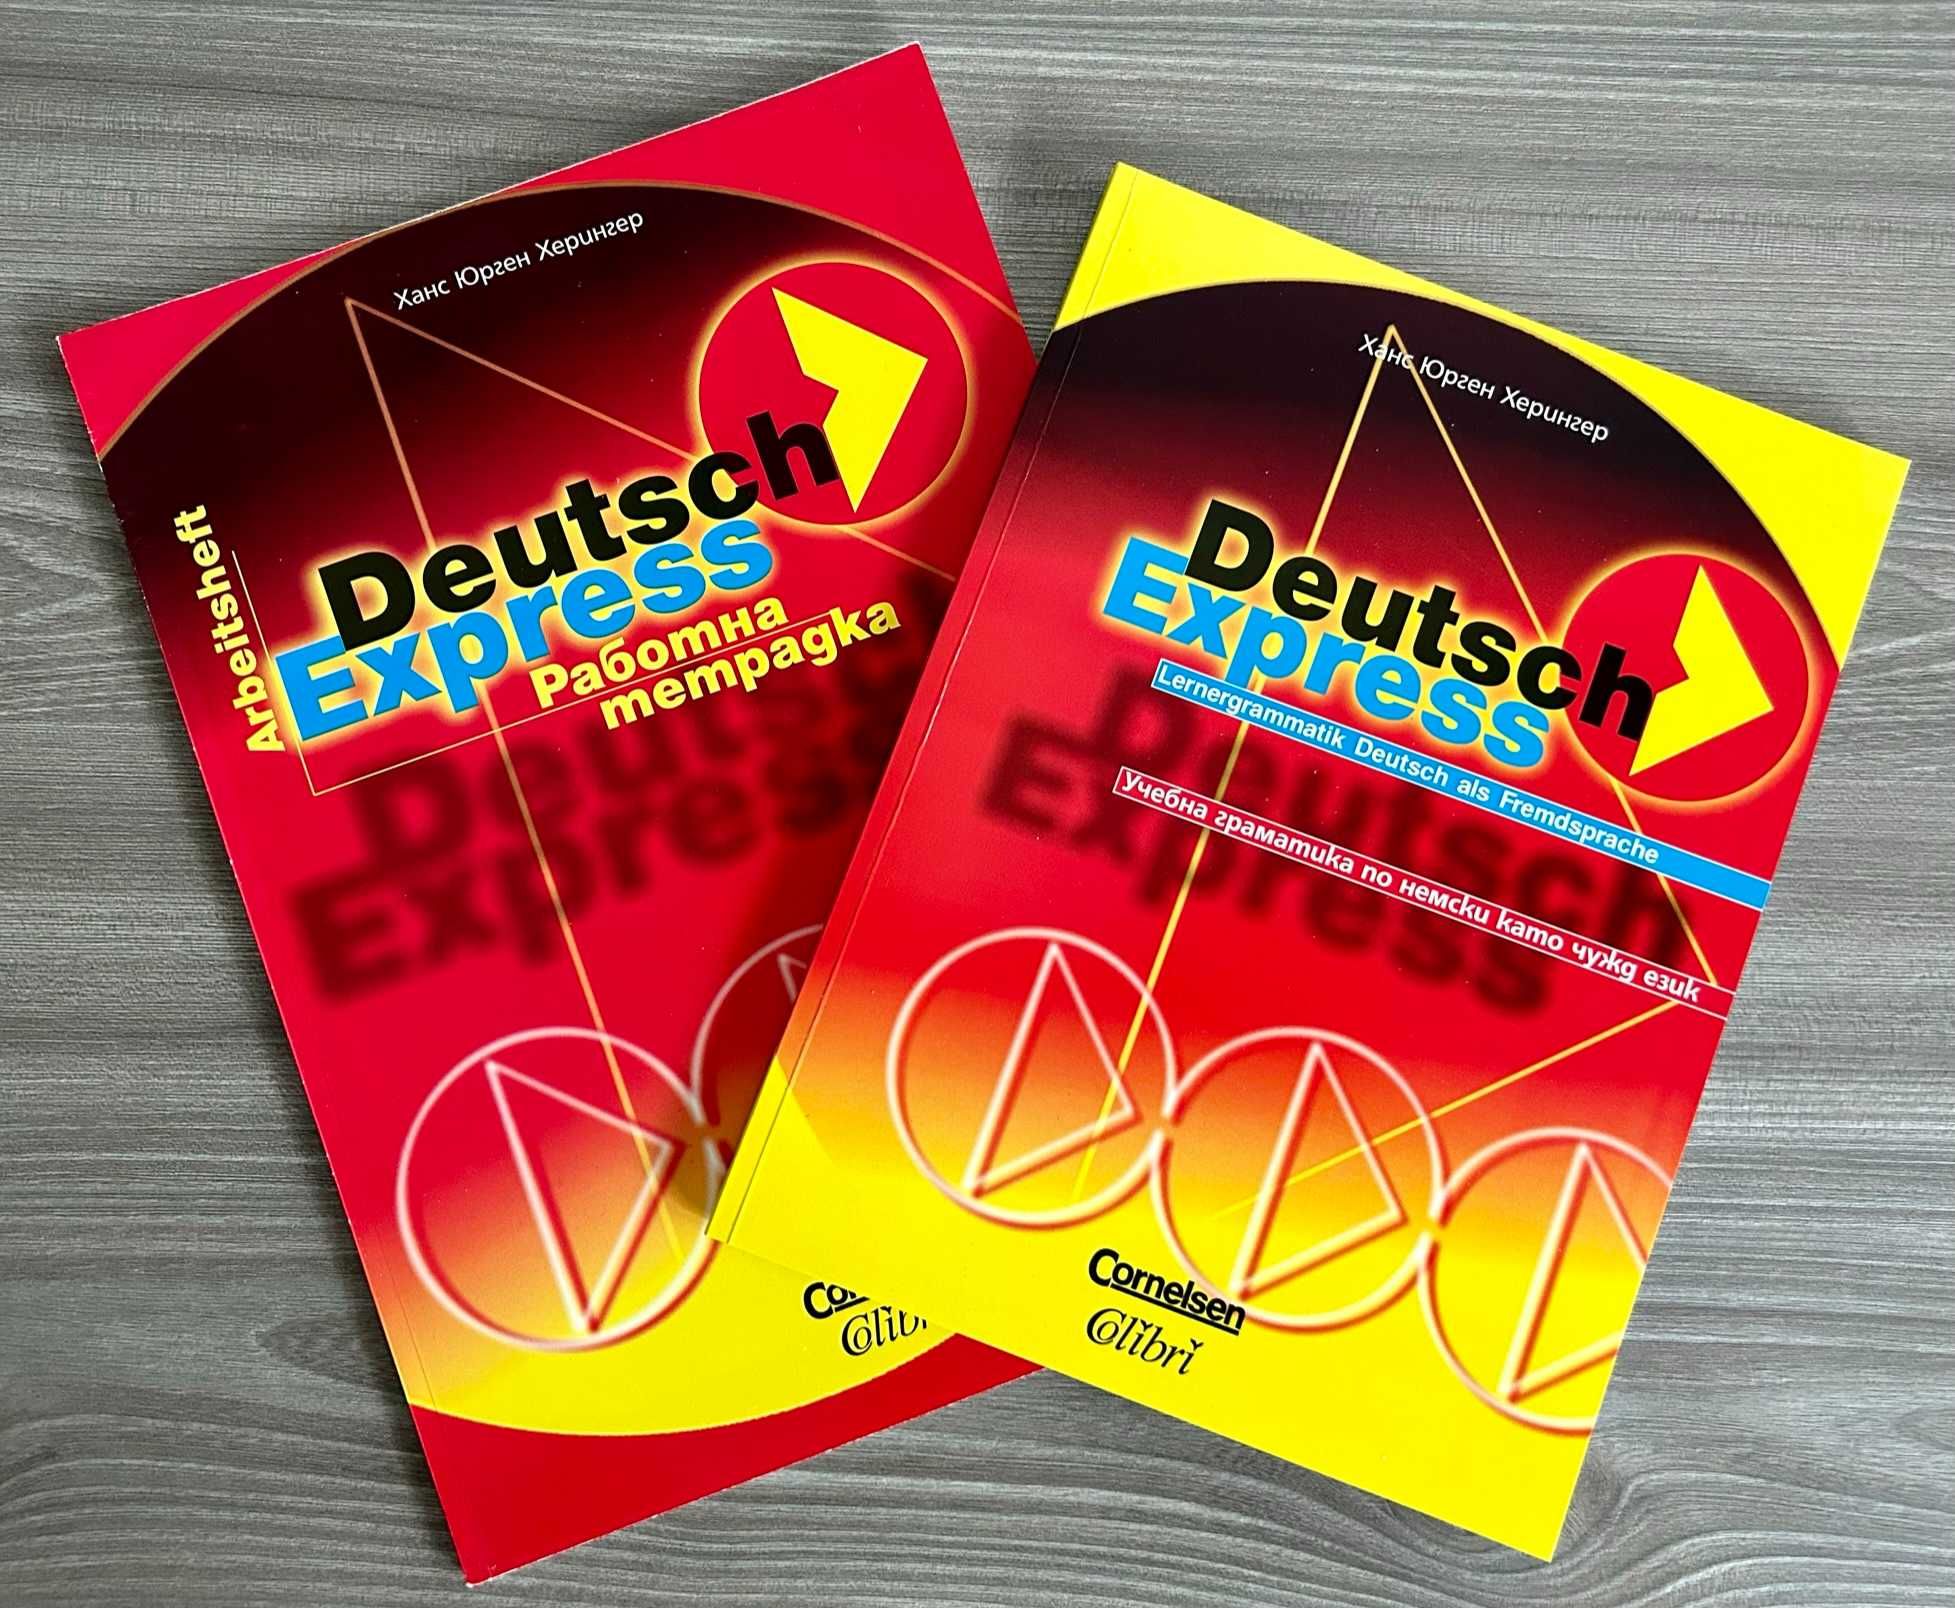 Комплект граматика и работна тетрадка по немски език Deutsch Express